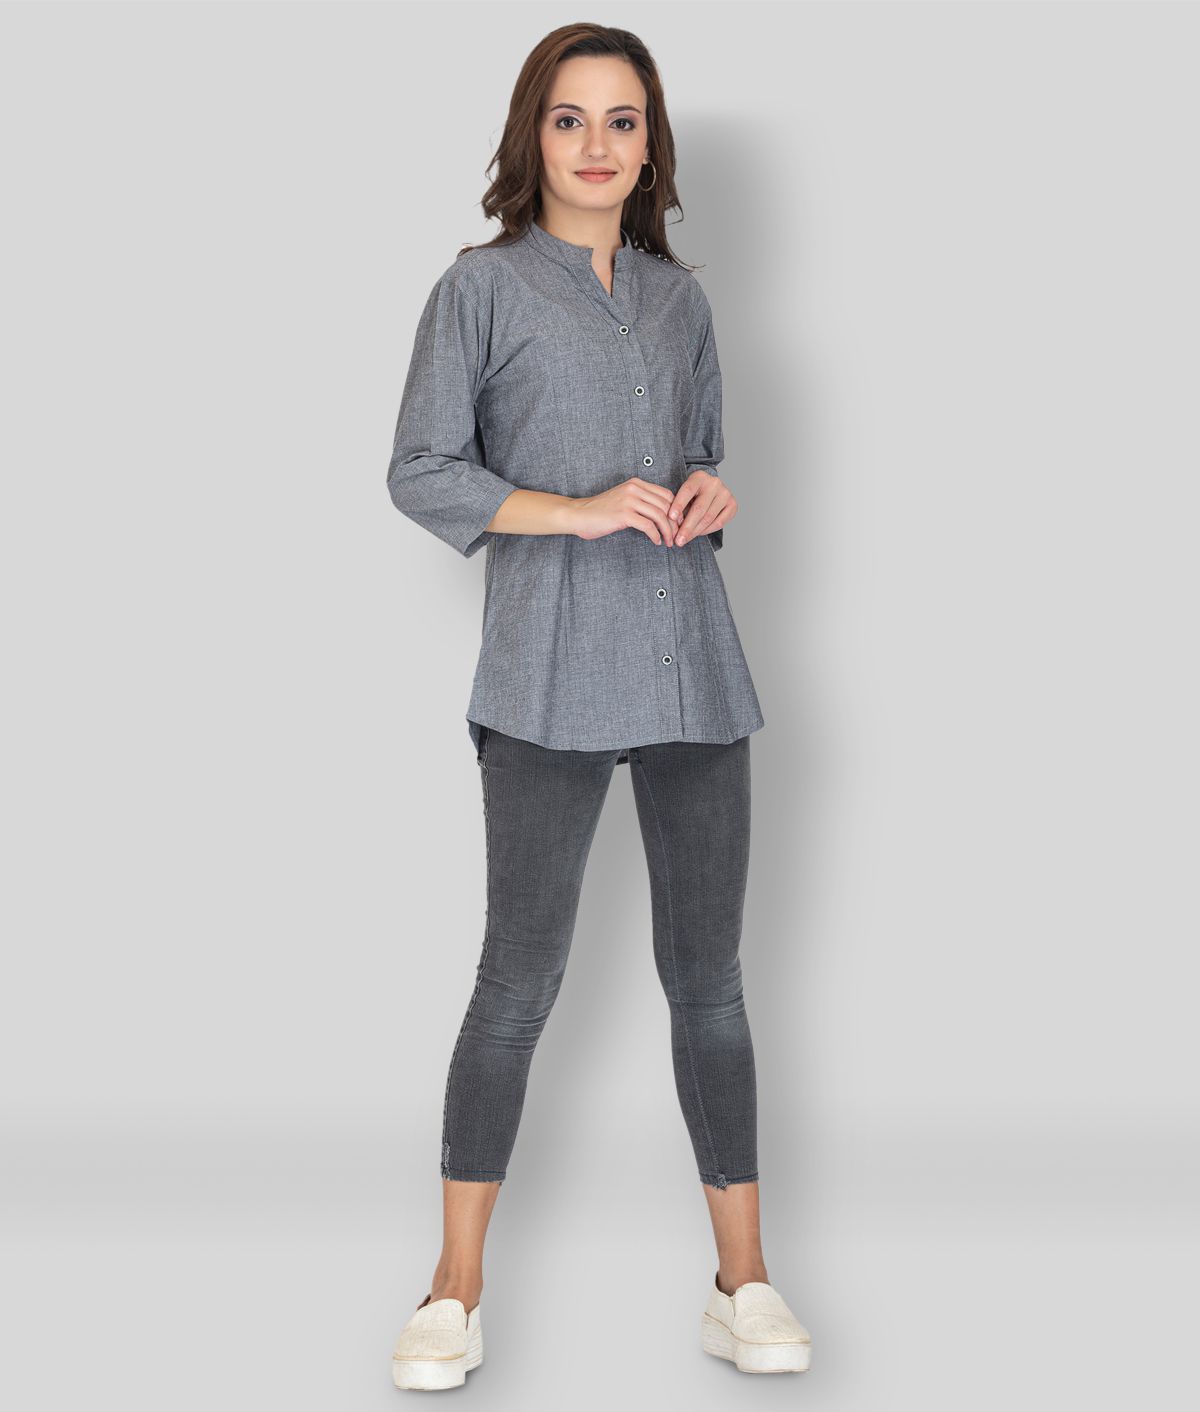     			SBA - Light Grey Cotton Blend Women's Shirt Style Top ( Pack of 1 )